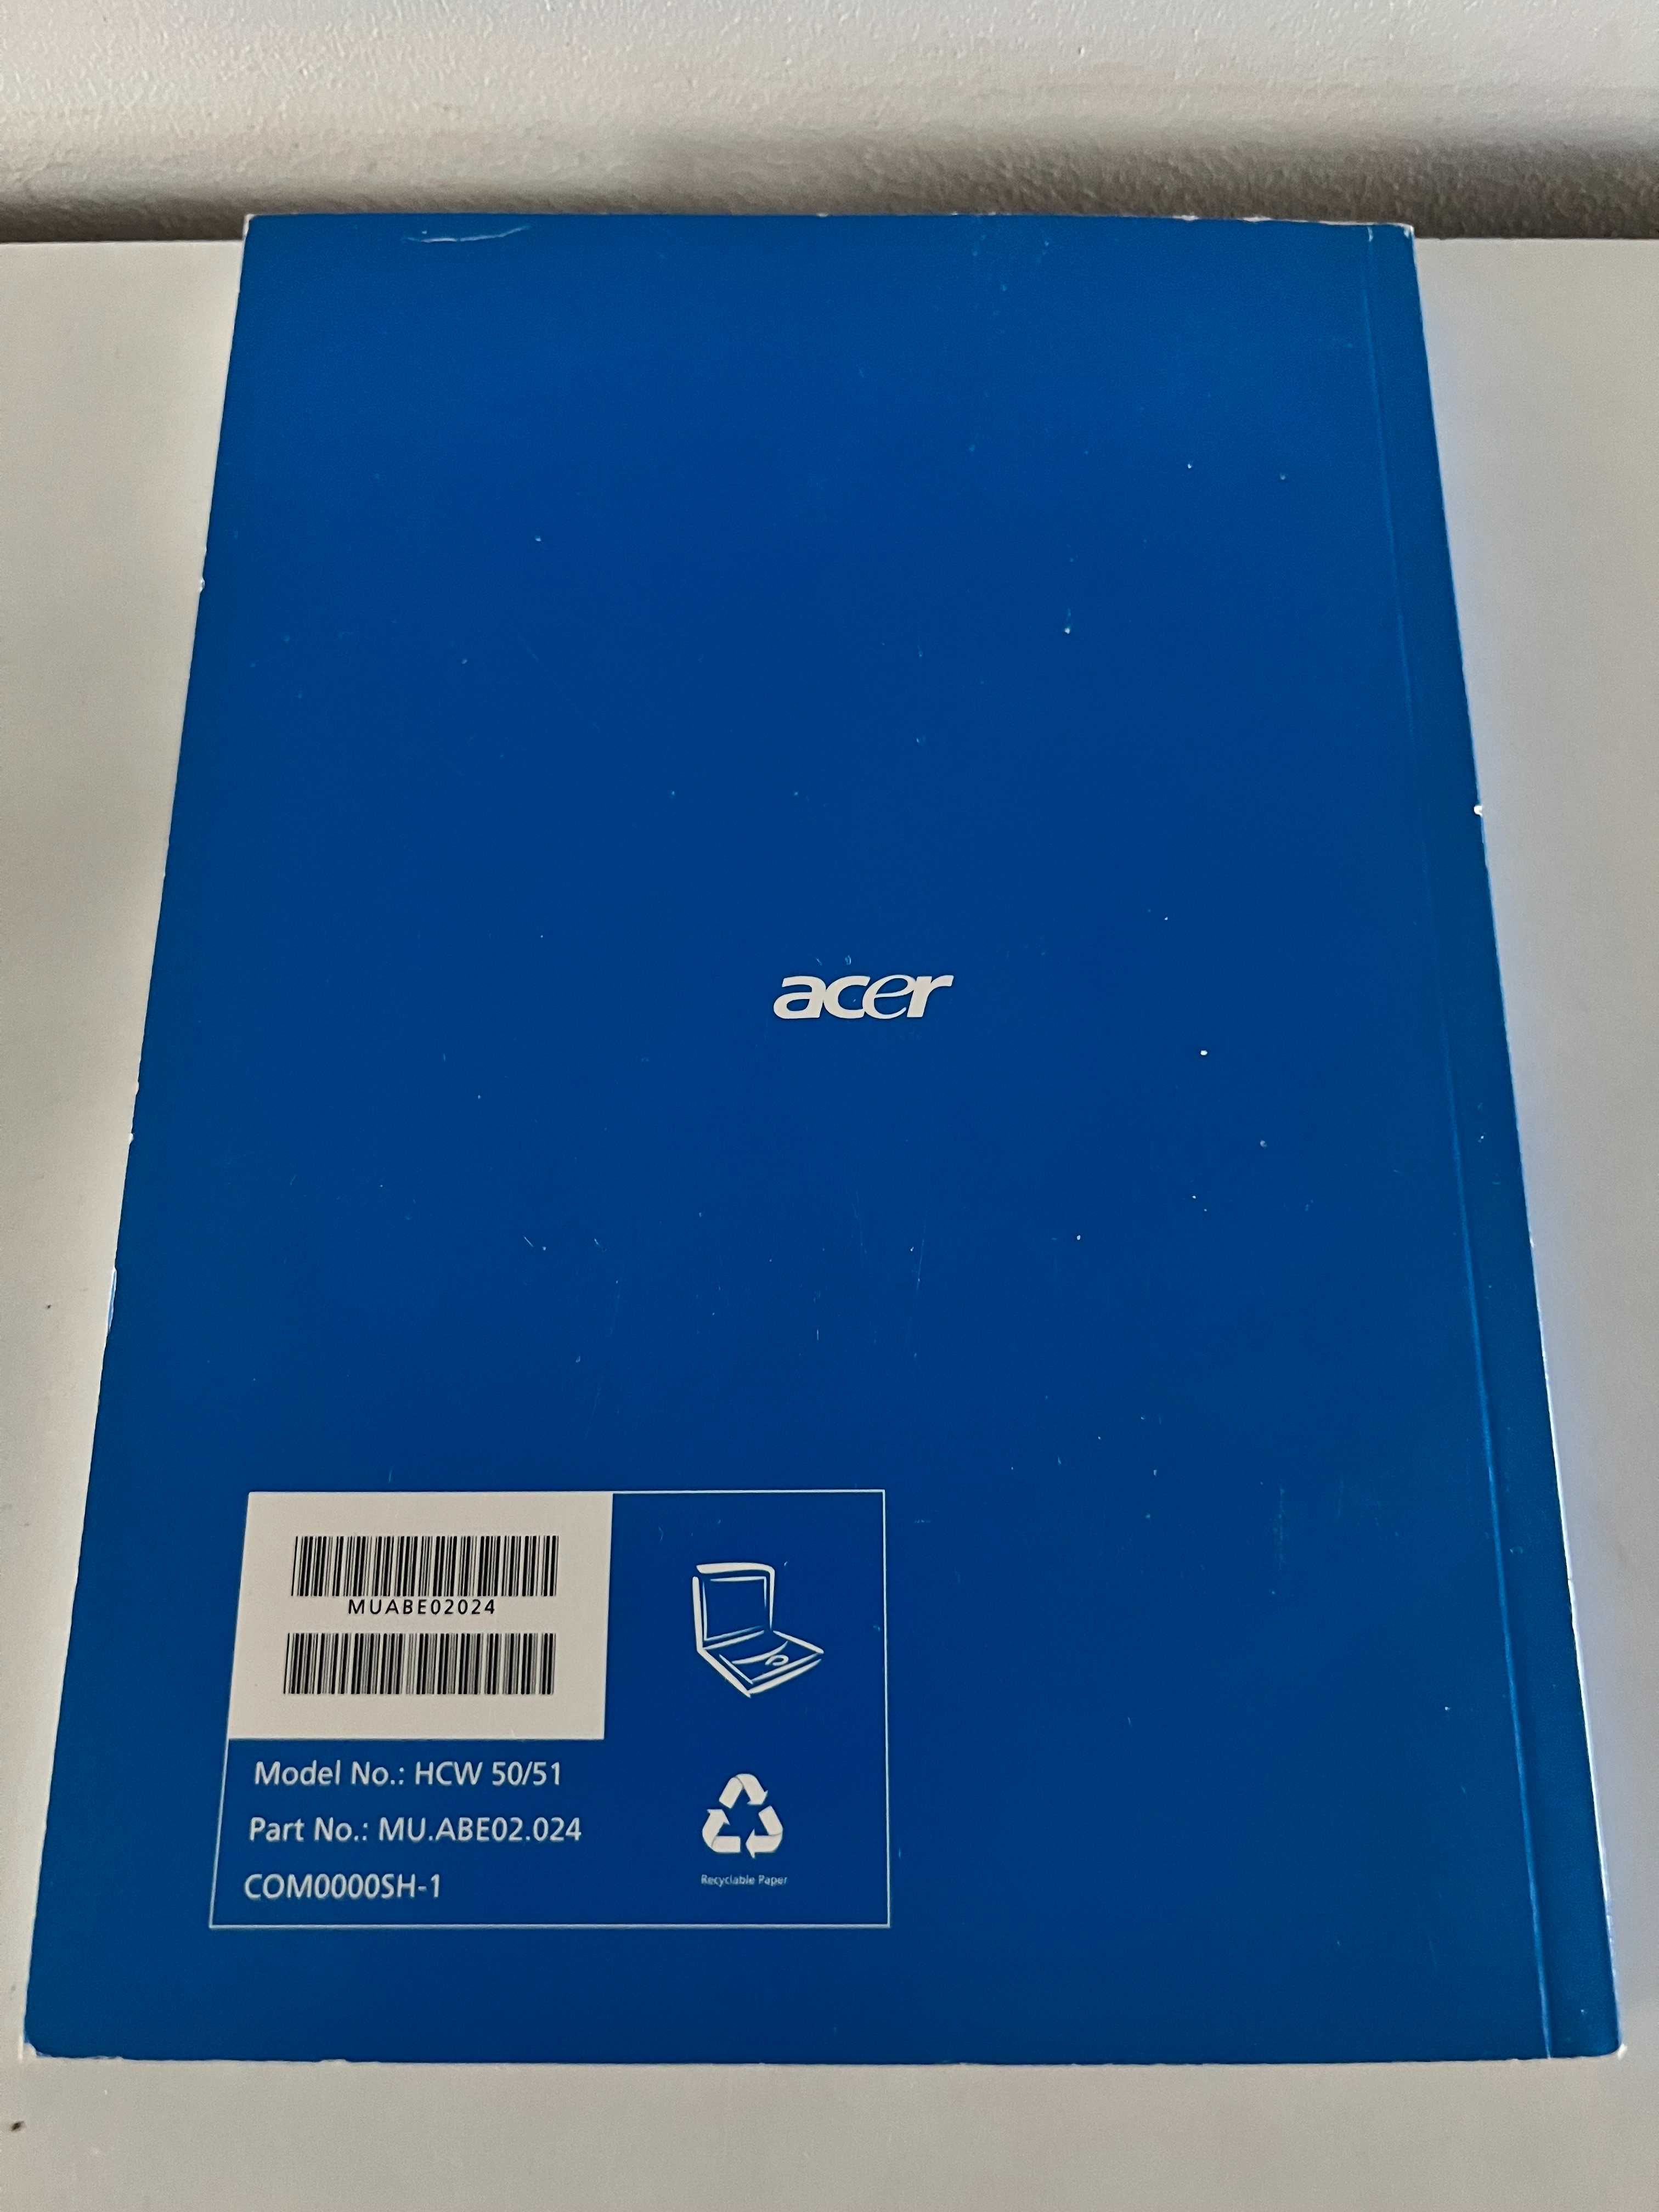 Instrukcja obsługi Acer Aspire 5110/5100/3100 Series